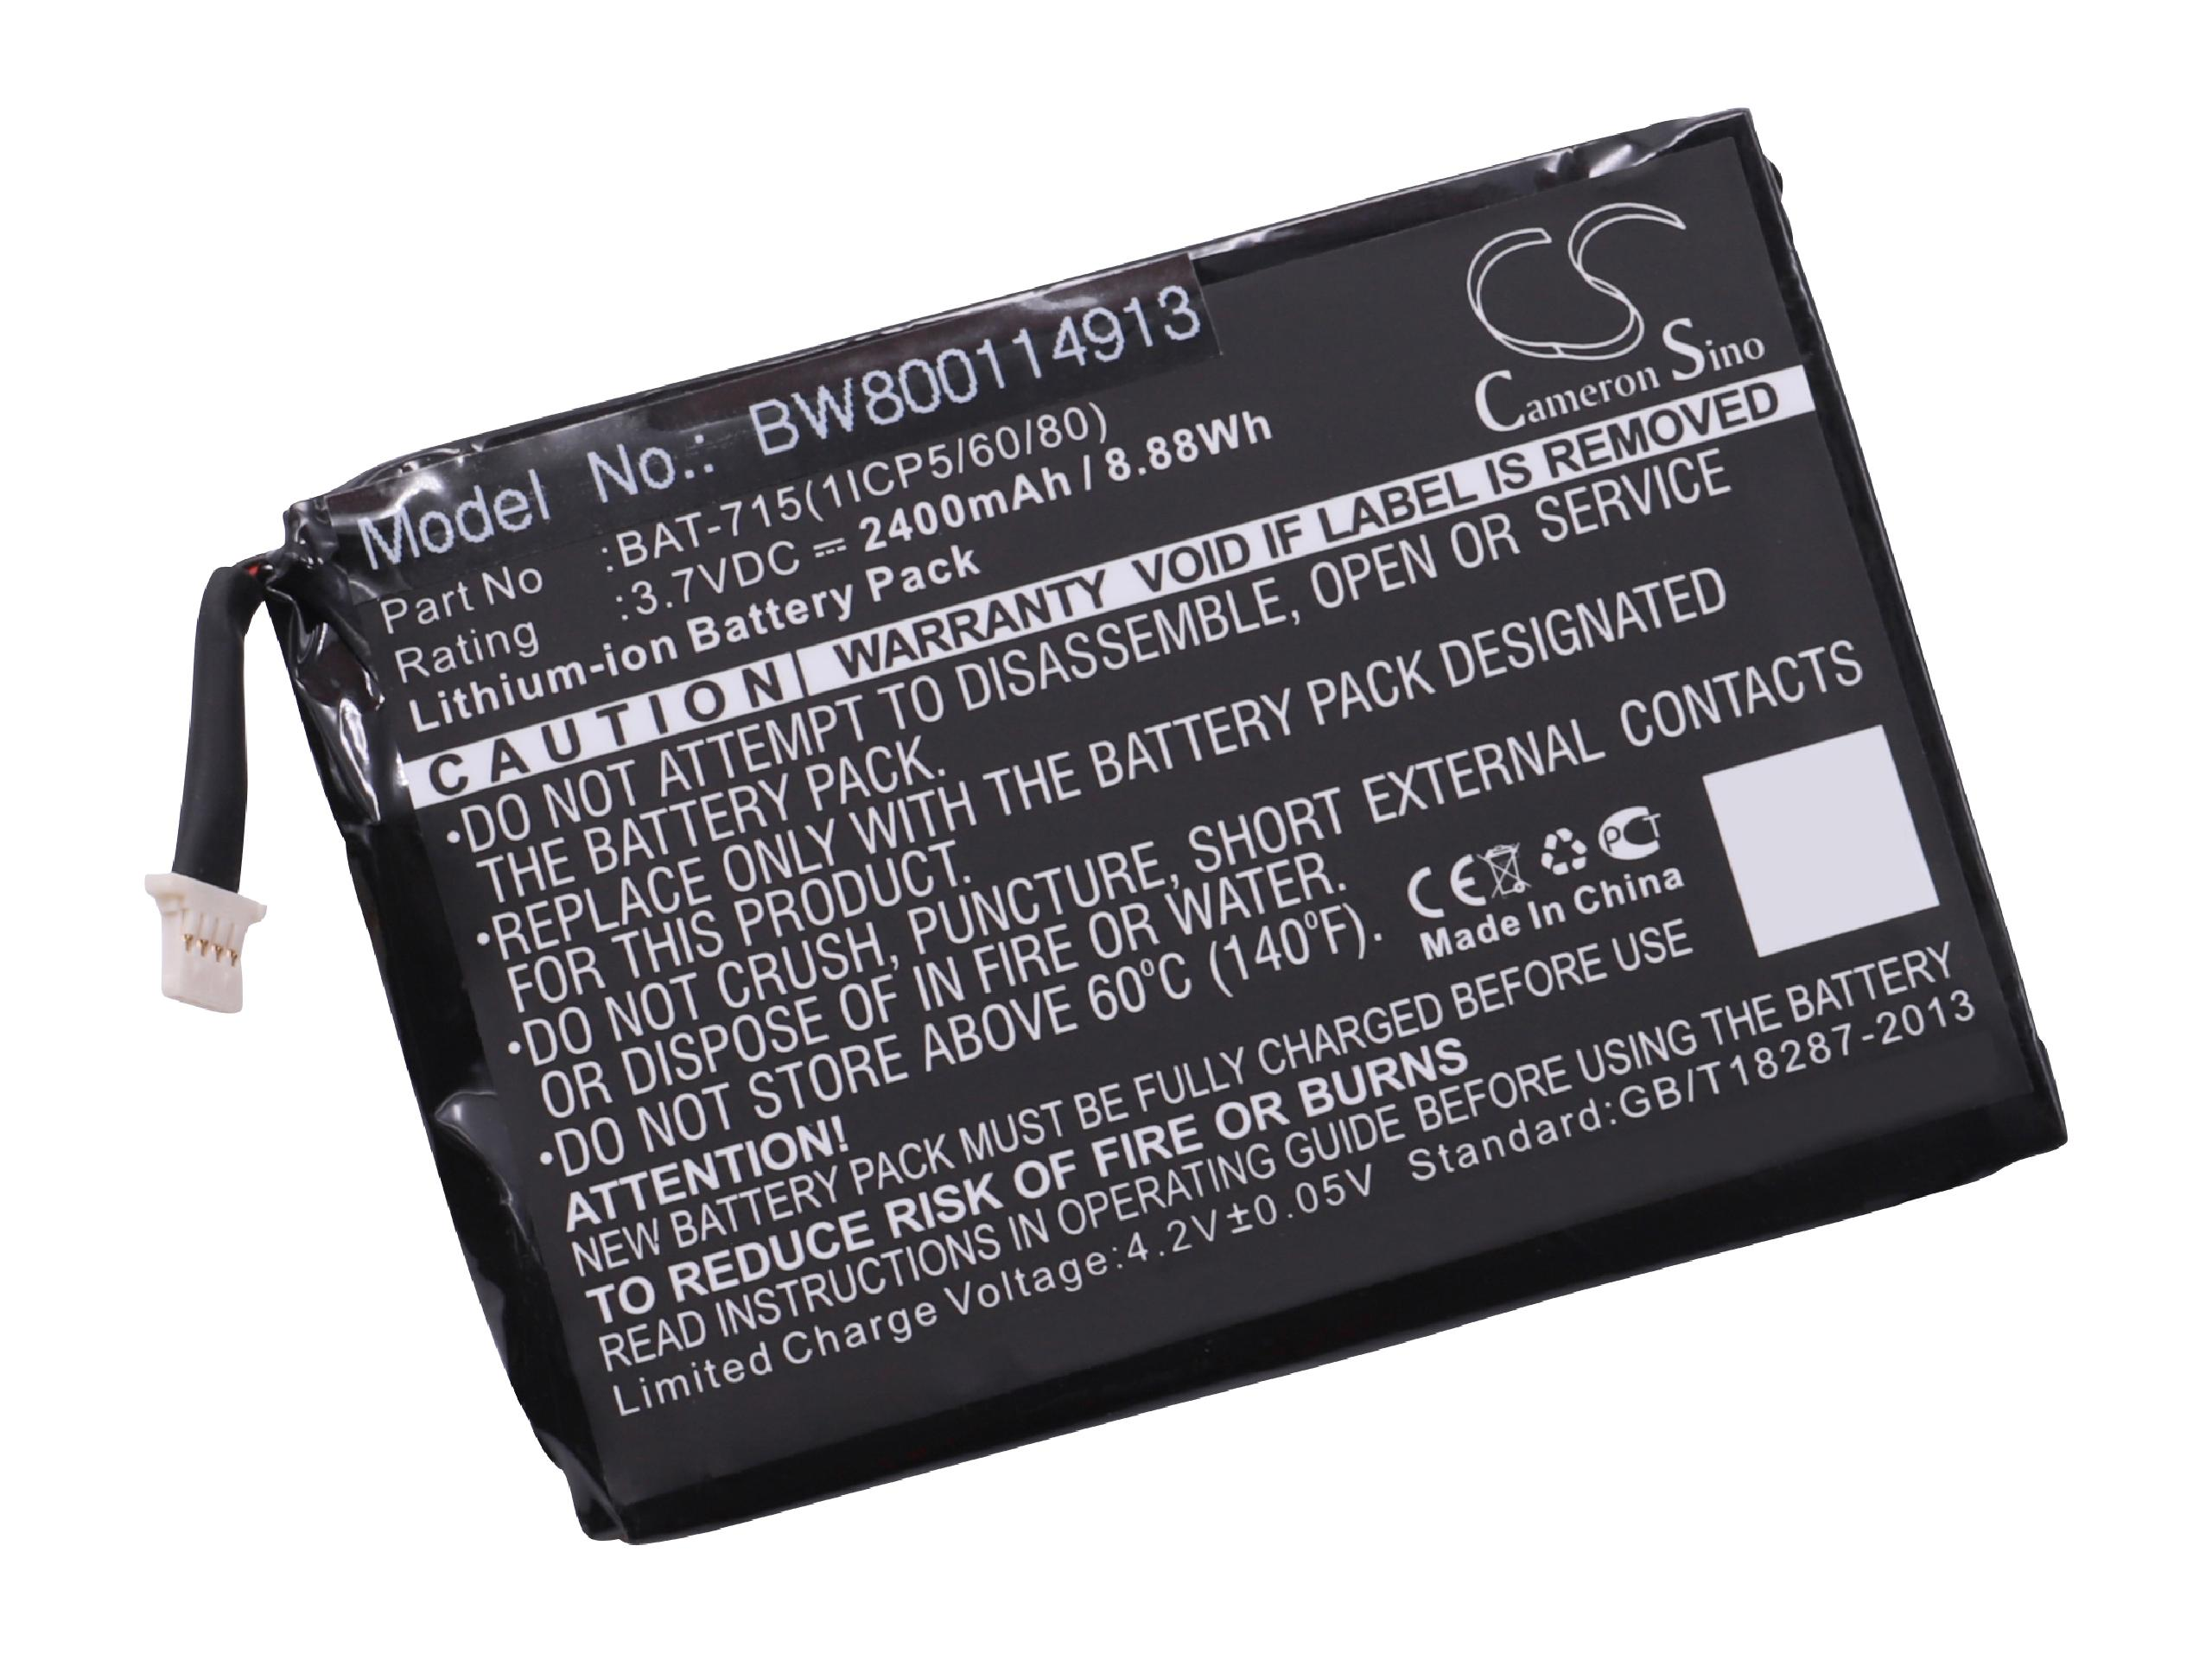 Ersatz KT.00103.001, Volt, Akku für Li-Polymer 3.7 Acer VHBW für BAT-715(1ICP5/60/80) Tablet, - 2400